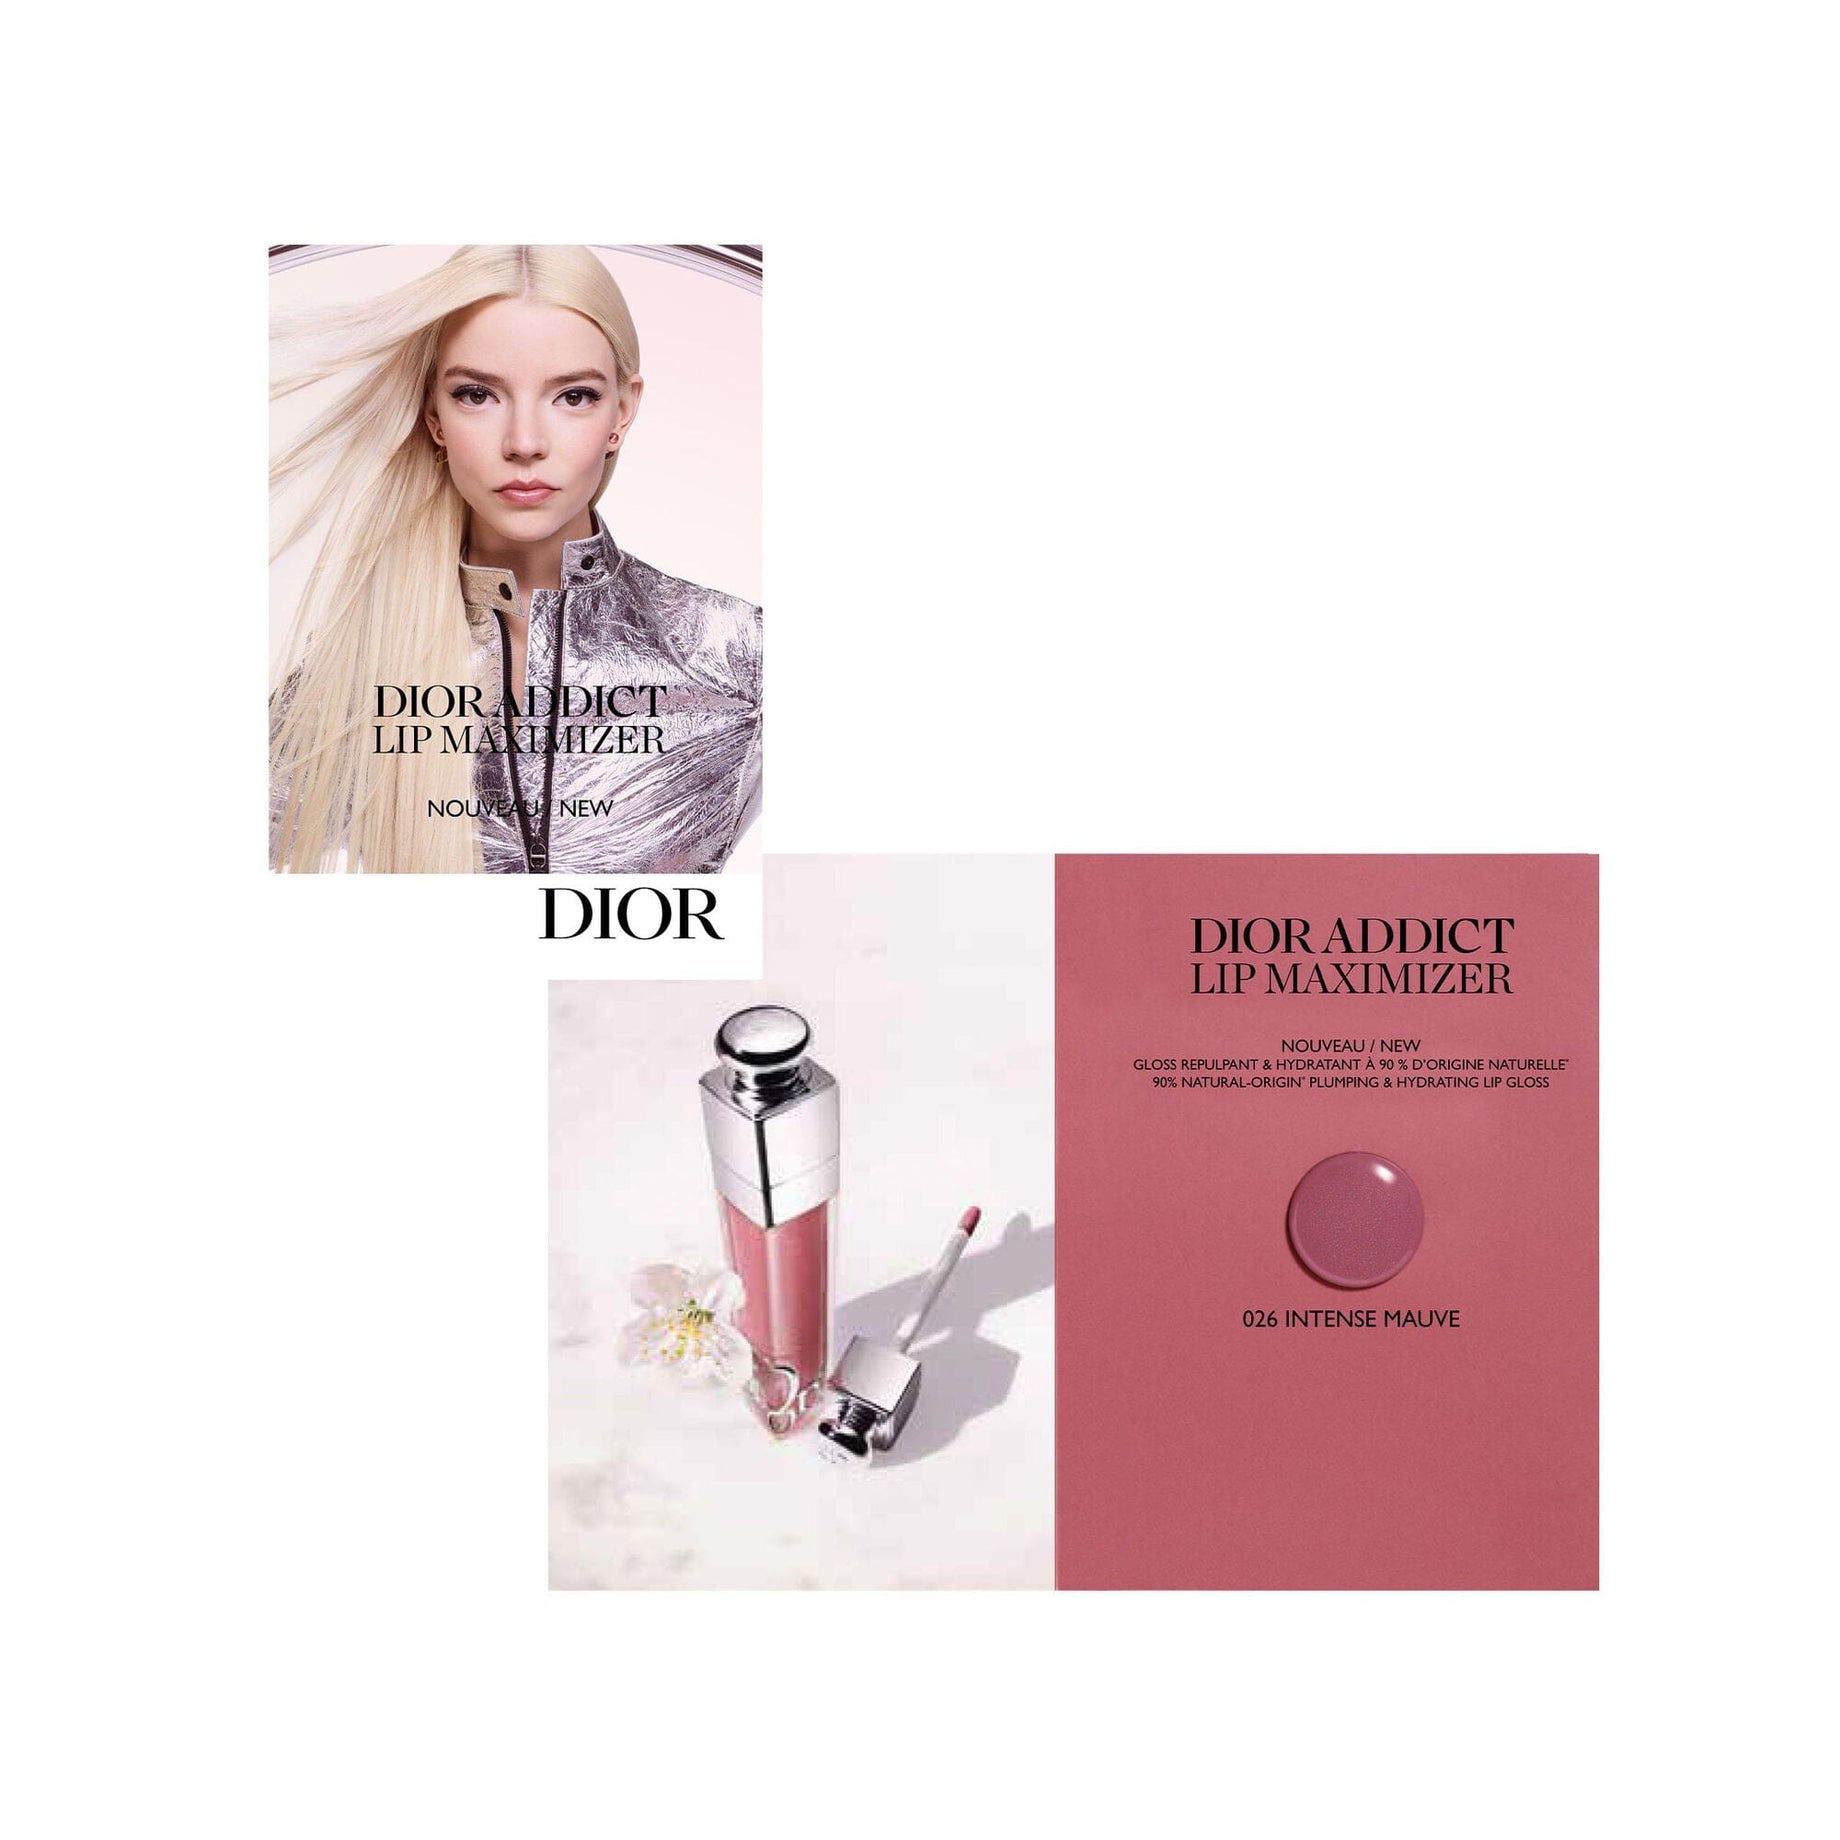 Dior Addict Lip Maximizer bubble card